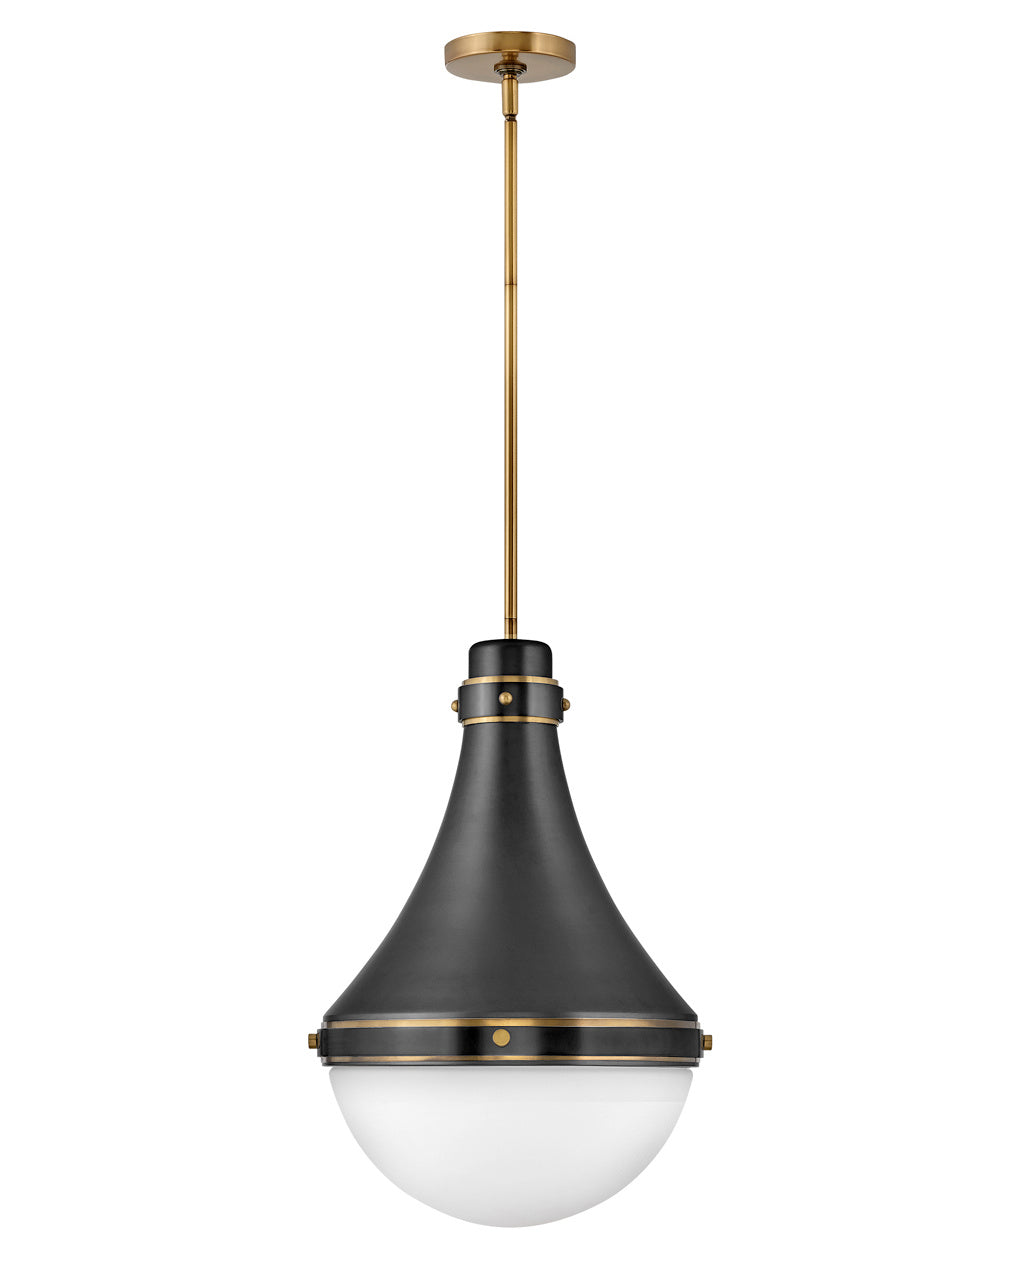 Hinkley Canada - LED Pendant - Oliver - Black- Union Lighting Luminaires Decor